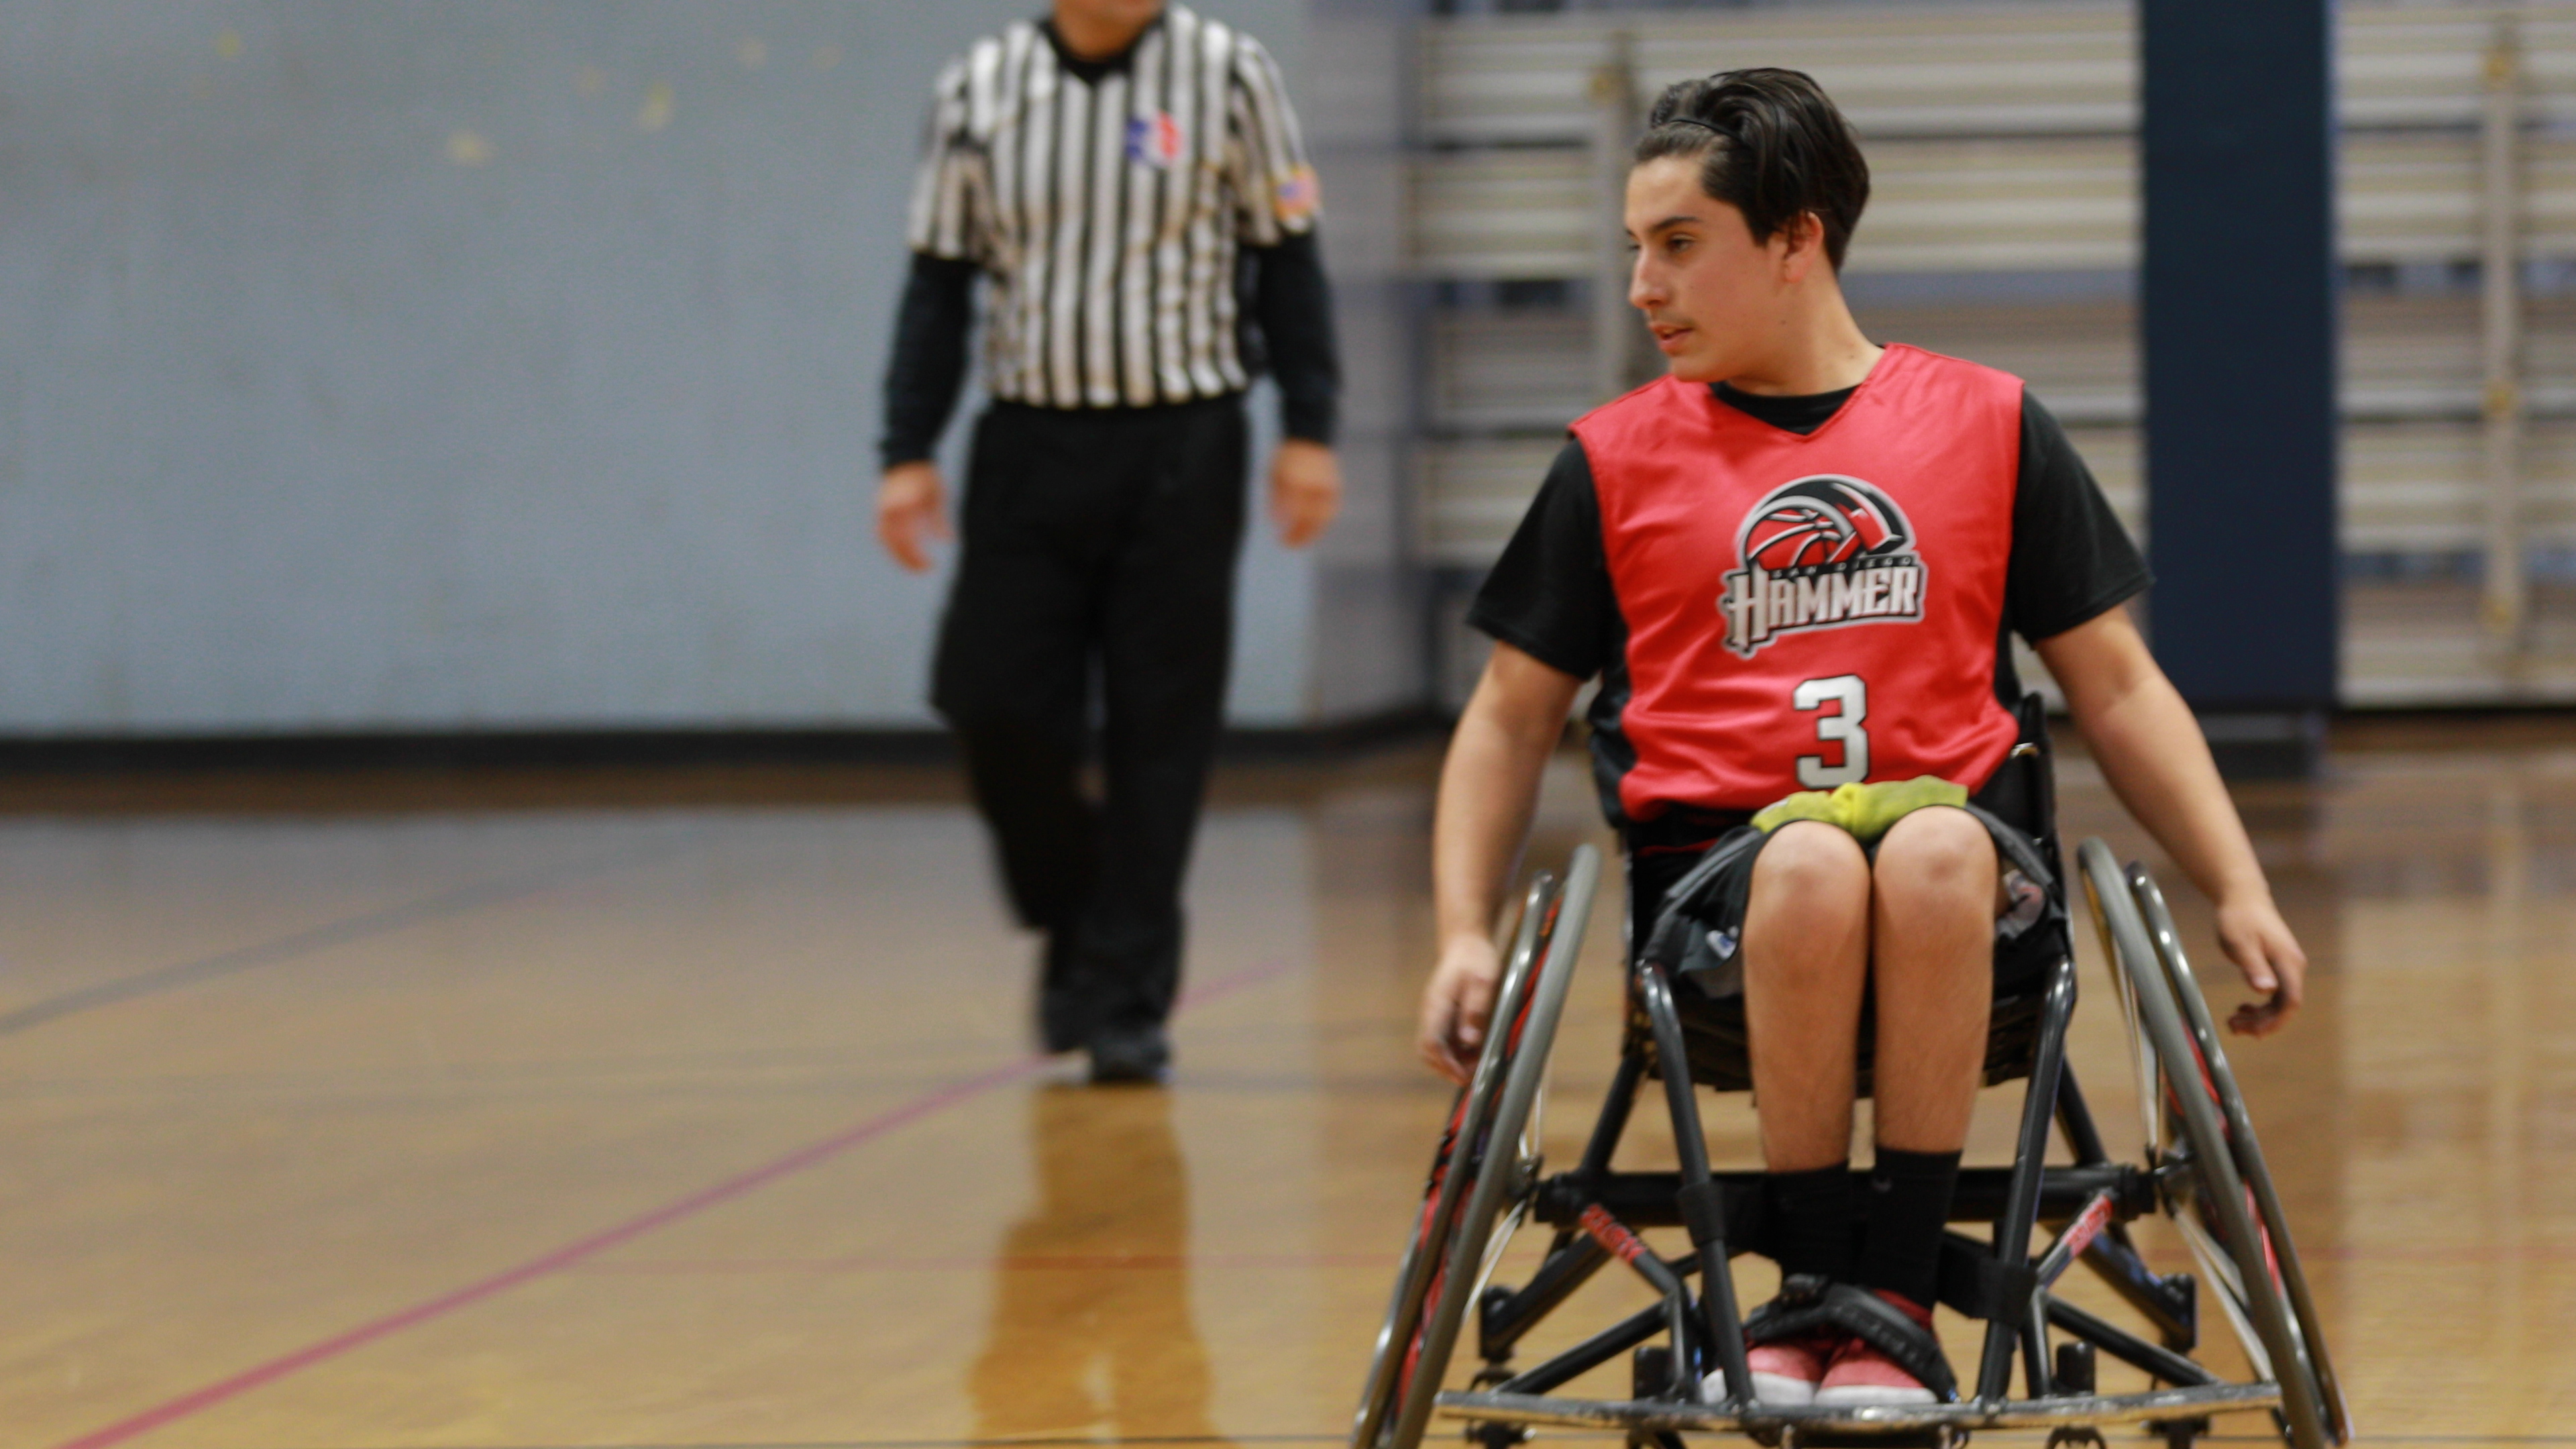 Danny playing wheelchair basketball at ASRA.